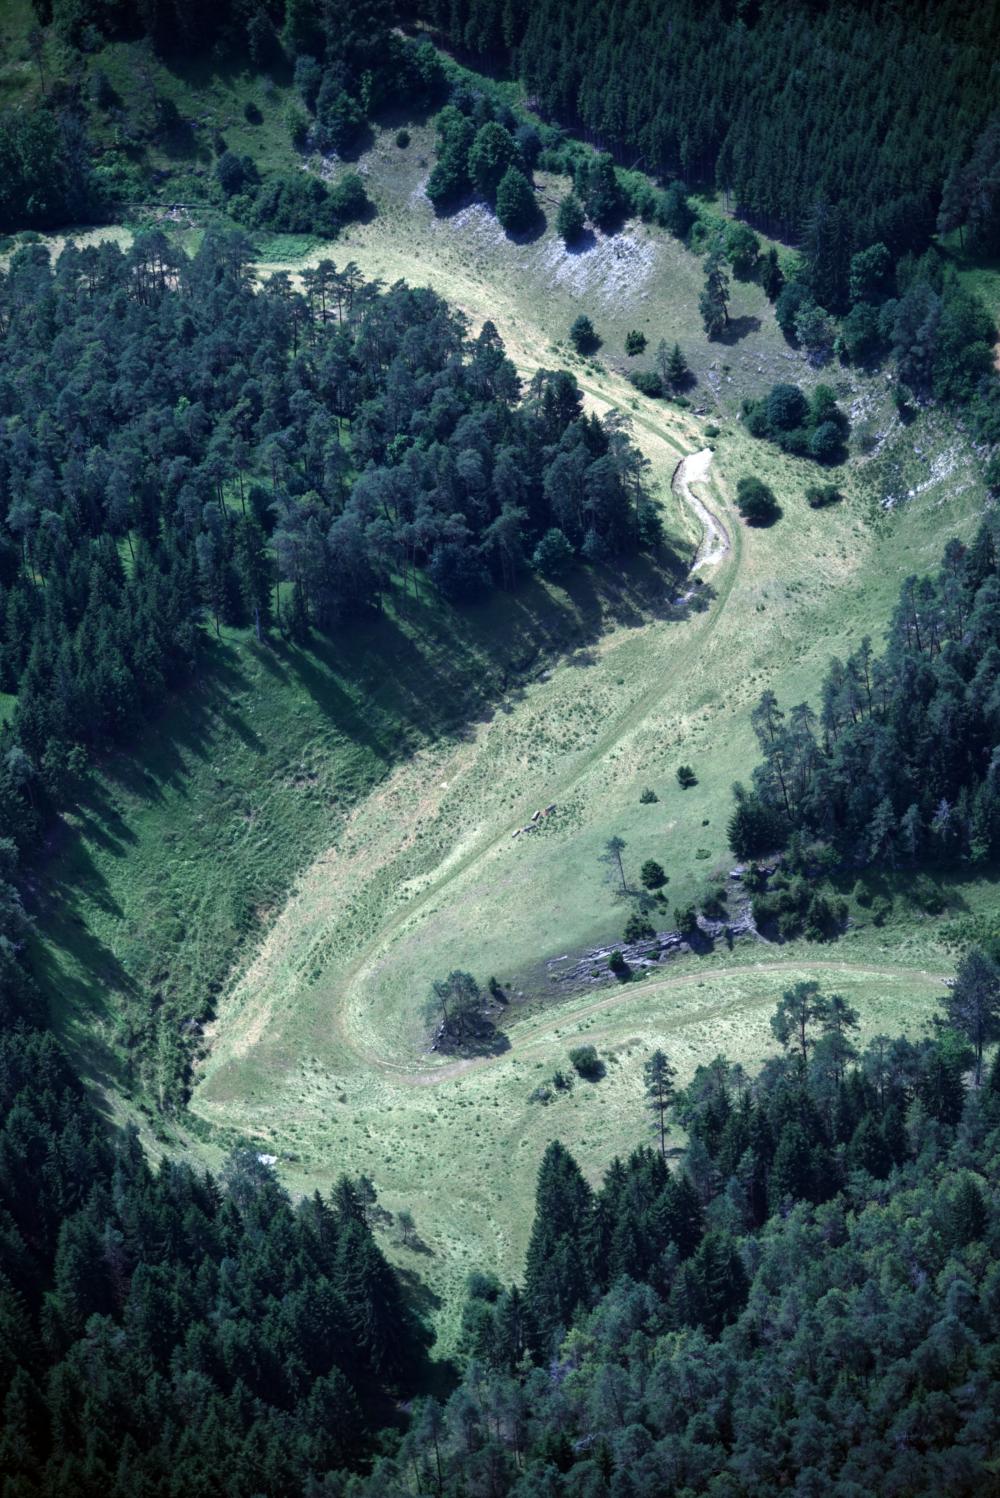 Abb. 9: Das eindrucksvolle Trockental der Leinleiter oberhalb der Heroldsmühle mit Blick nach Westen: Im vorderen Bildbereich, durch die Bewaldung bedeckt, treten die beiden Tummler aus.